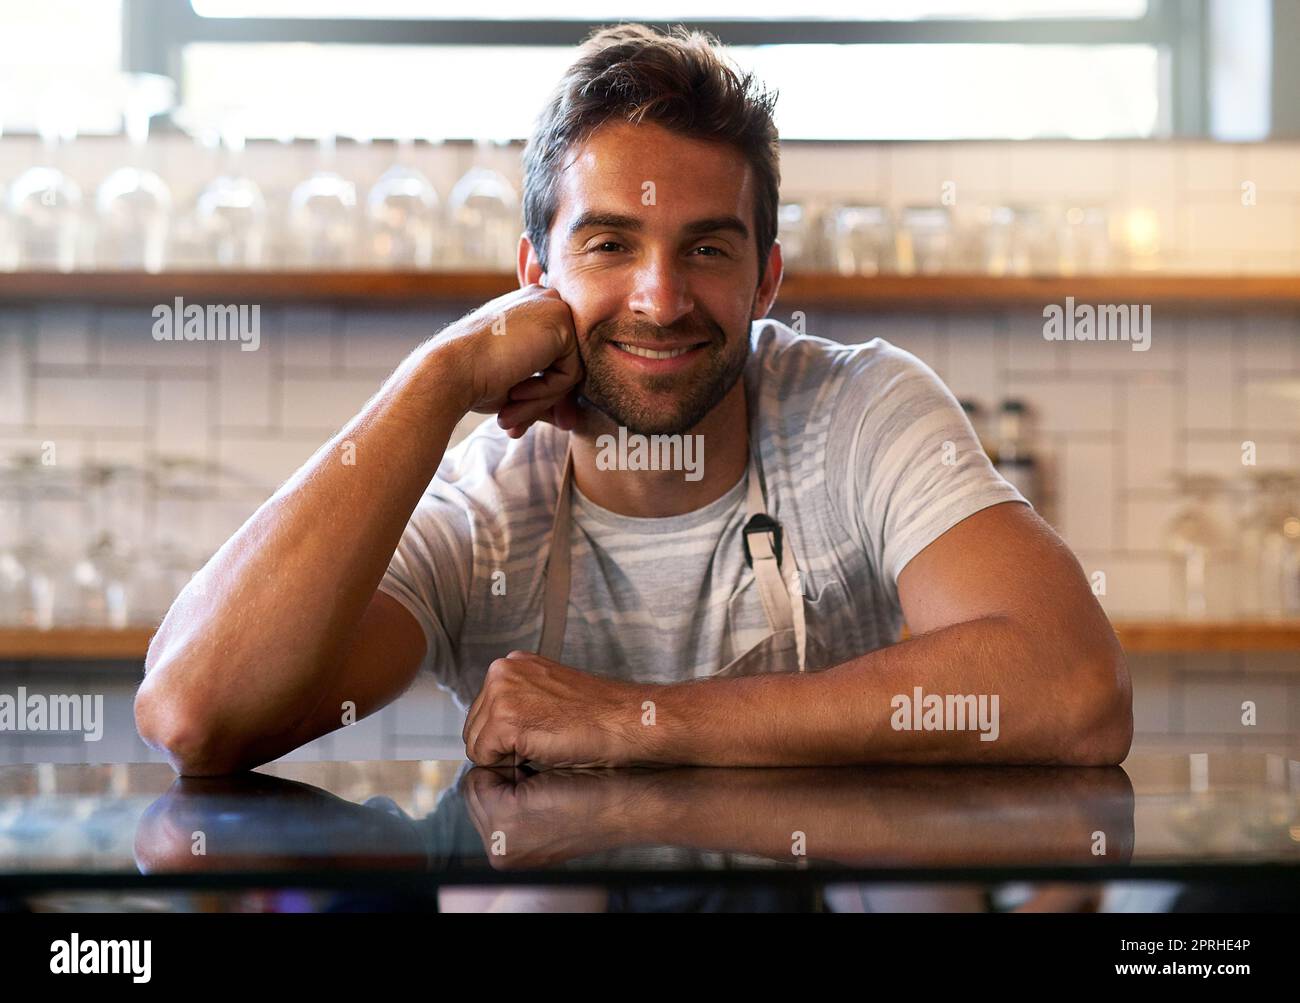 Er bietet immer den freundlichsten Service. Porträt eines jungen Geschäftsbesitzers, der in einem Café steht. Stockfoto